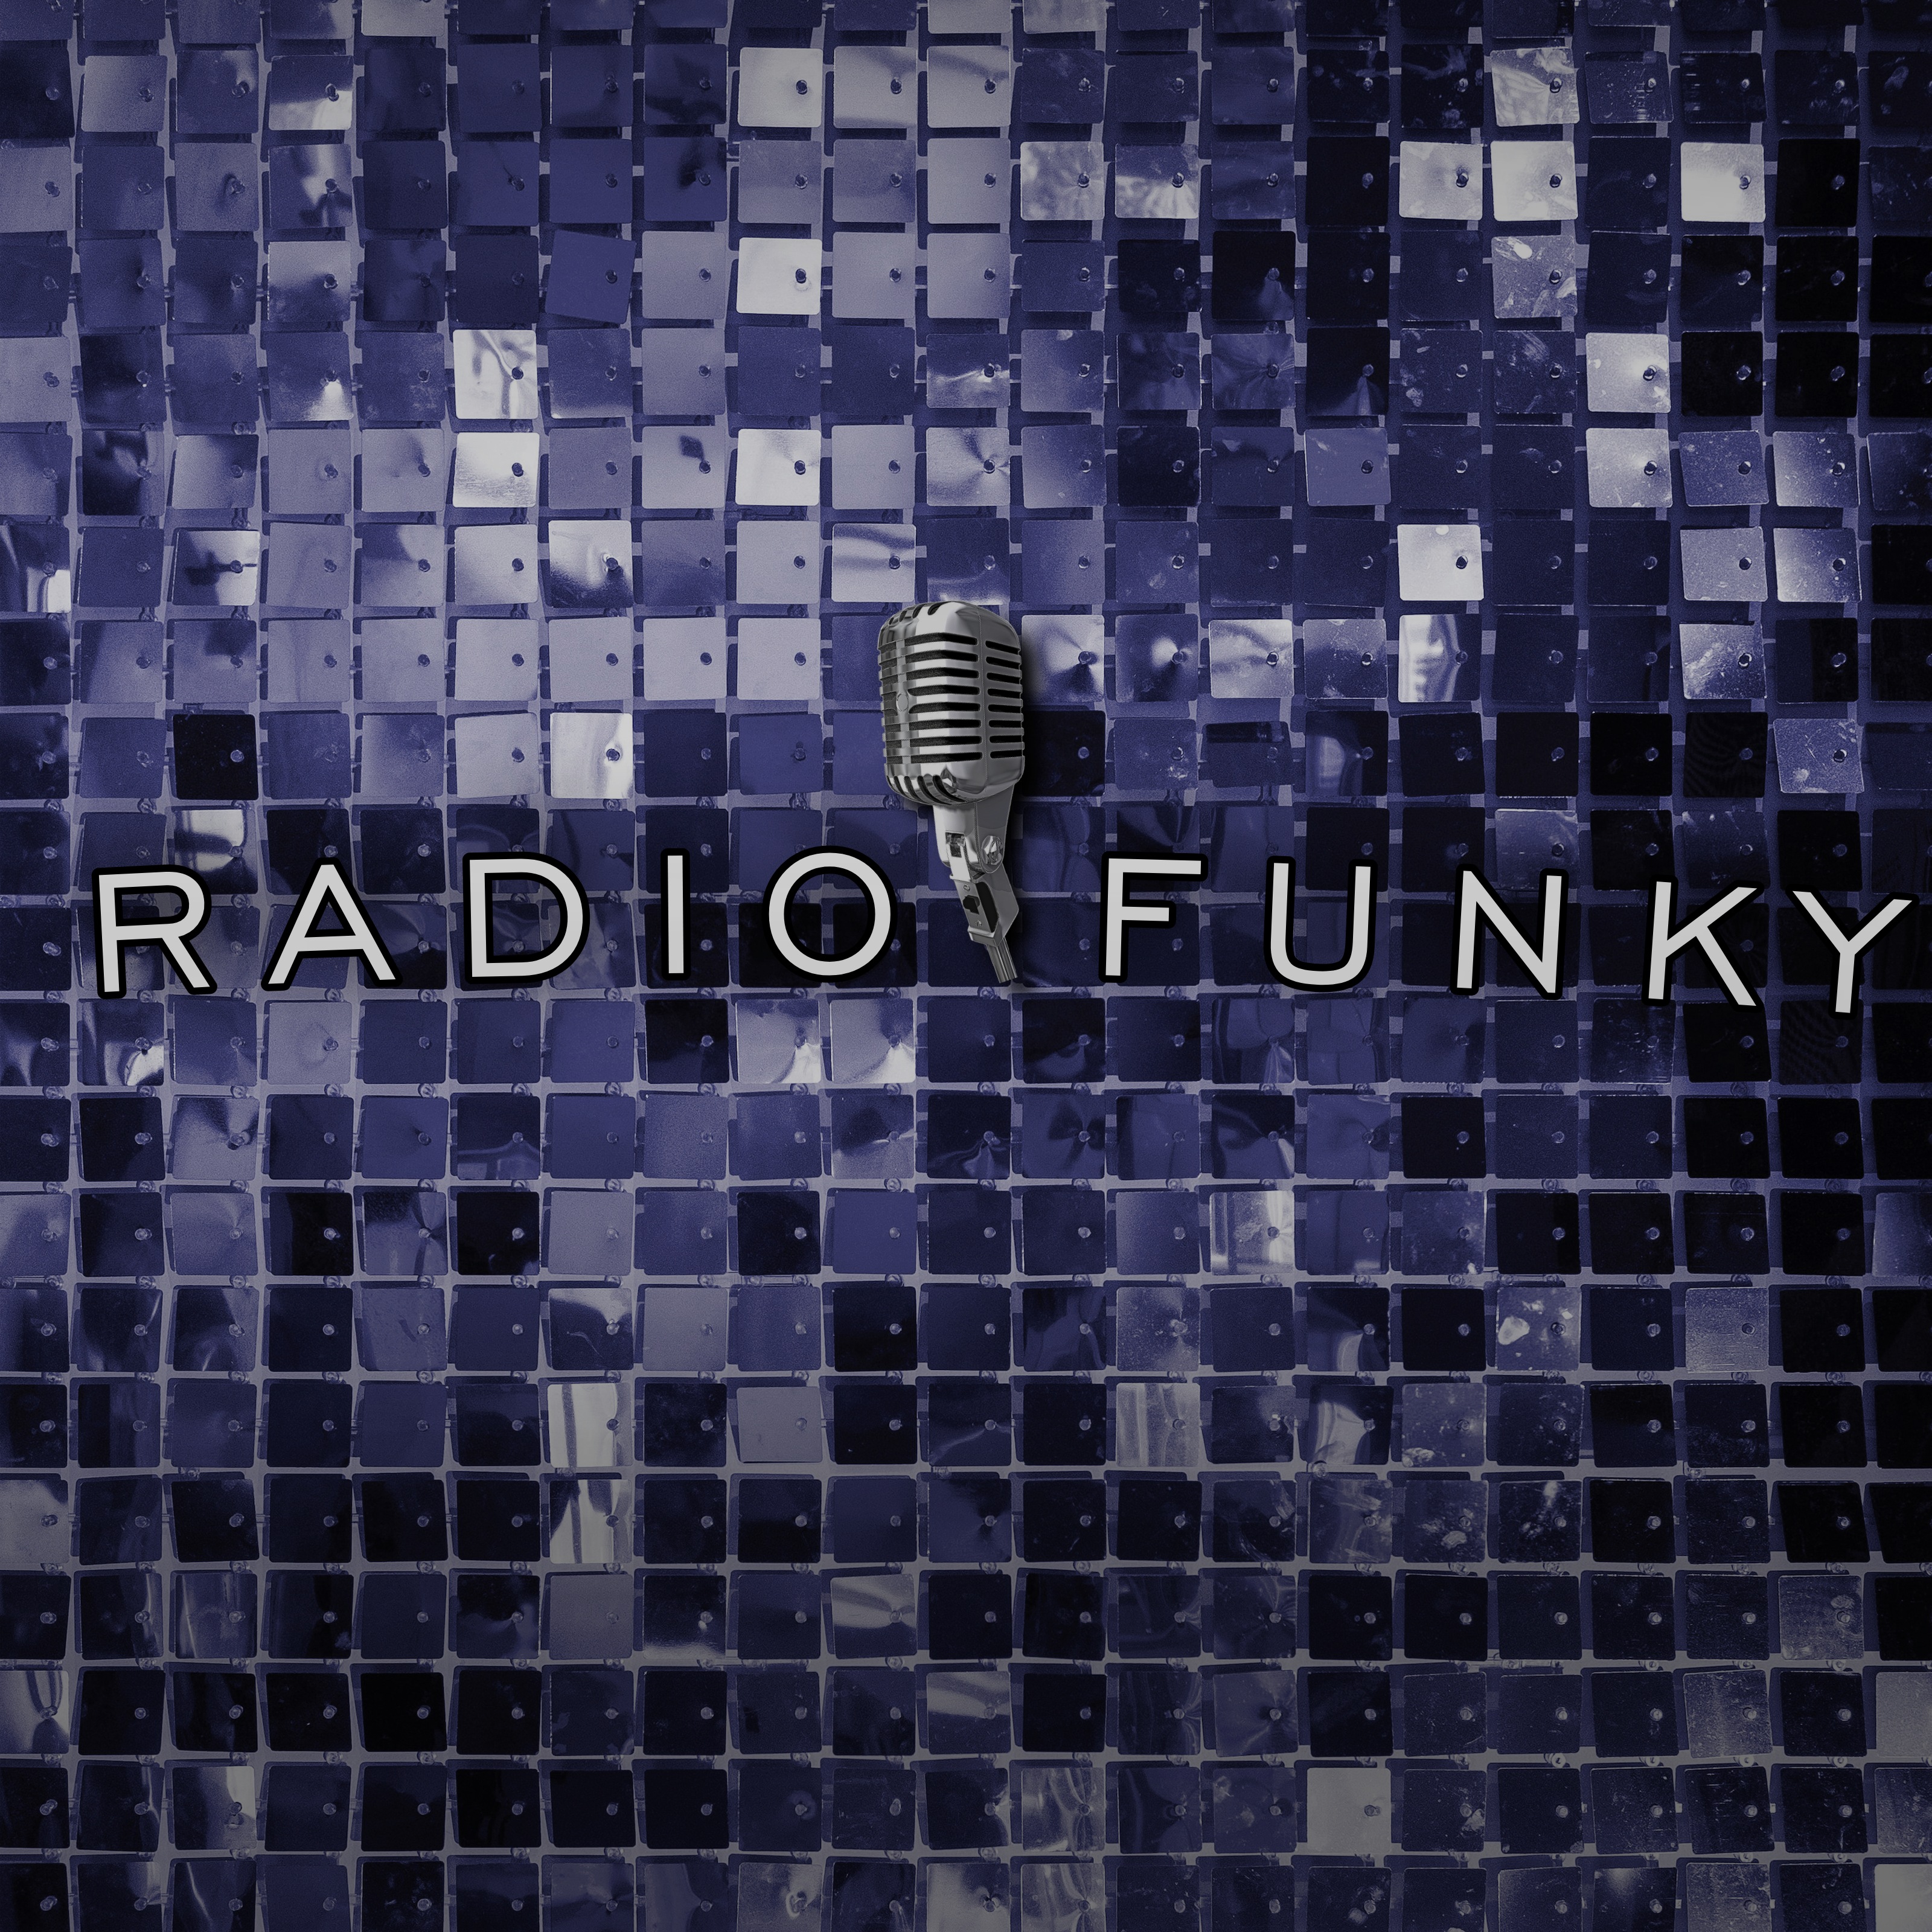 Radio_funky.jpg